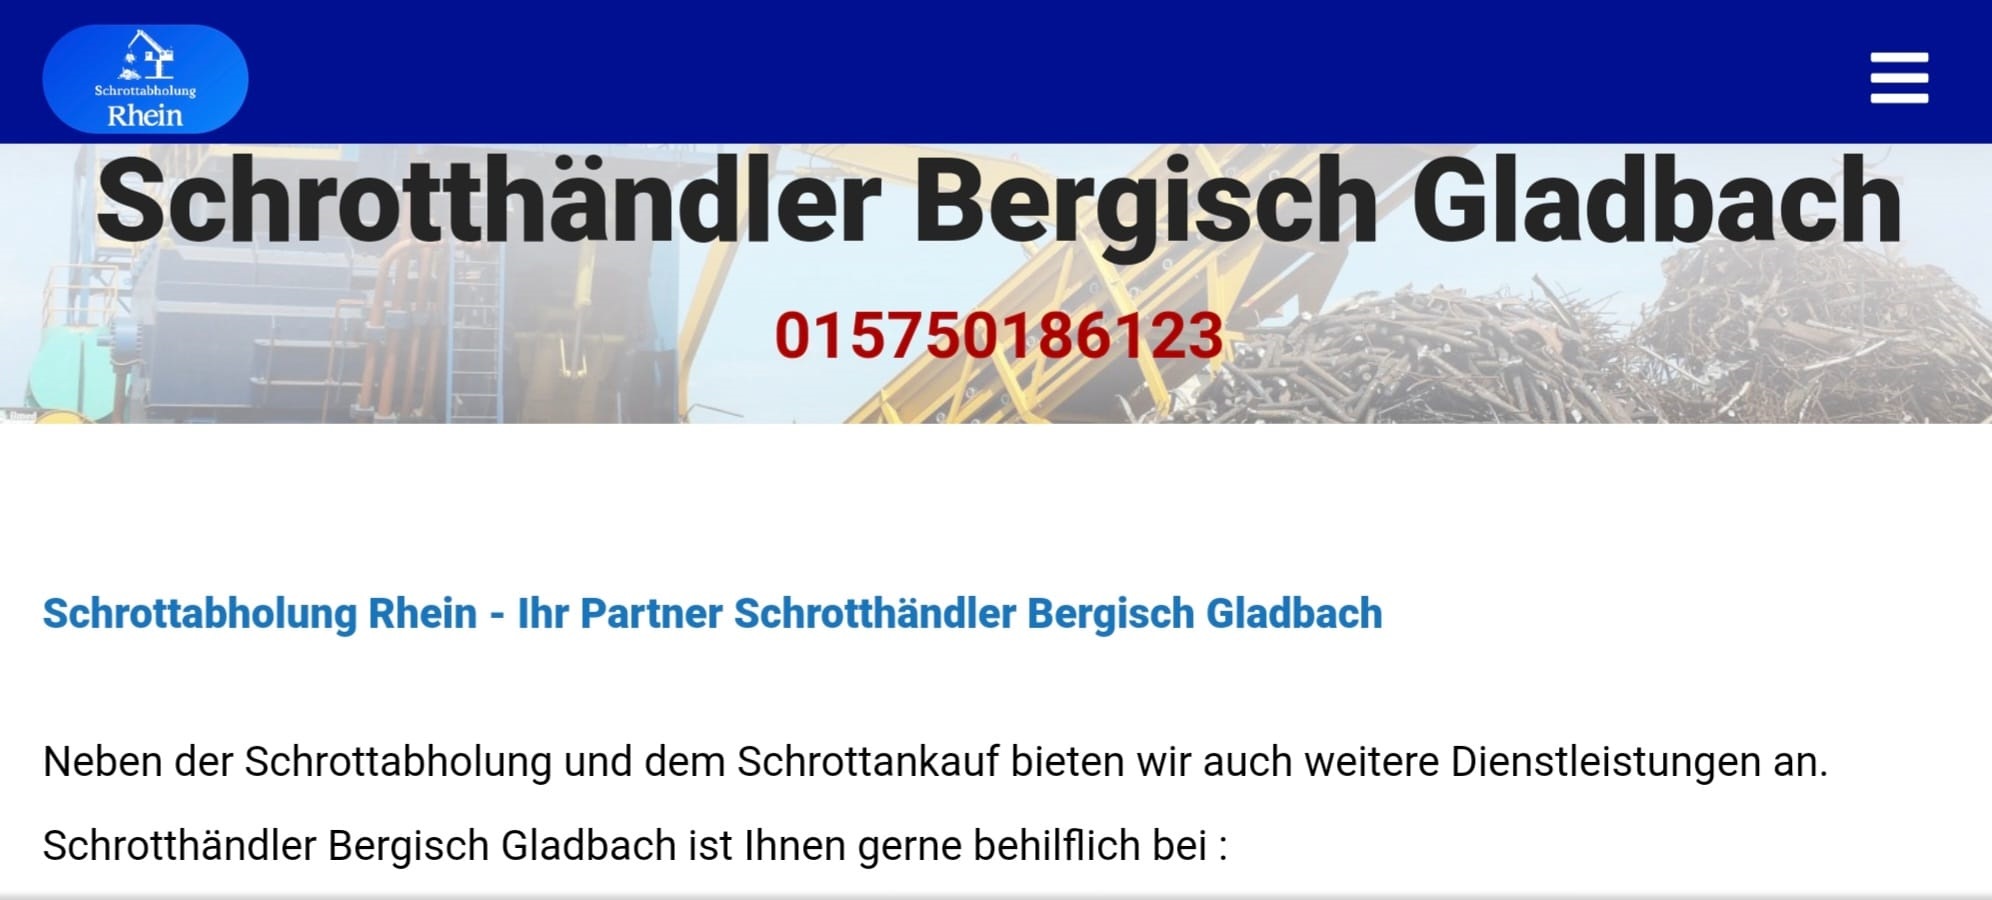 Gegen gute Preise Schrottankauf und kostenlose abholen lassen mit Schrotthändler Bergisch Gladbach